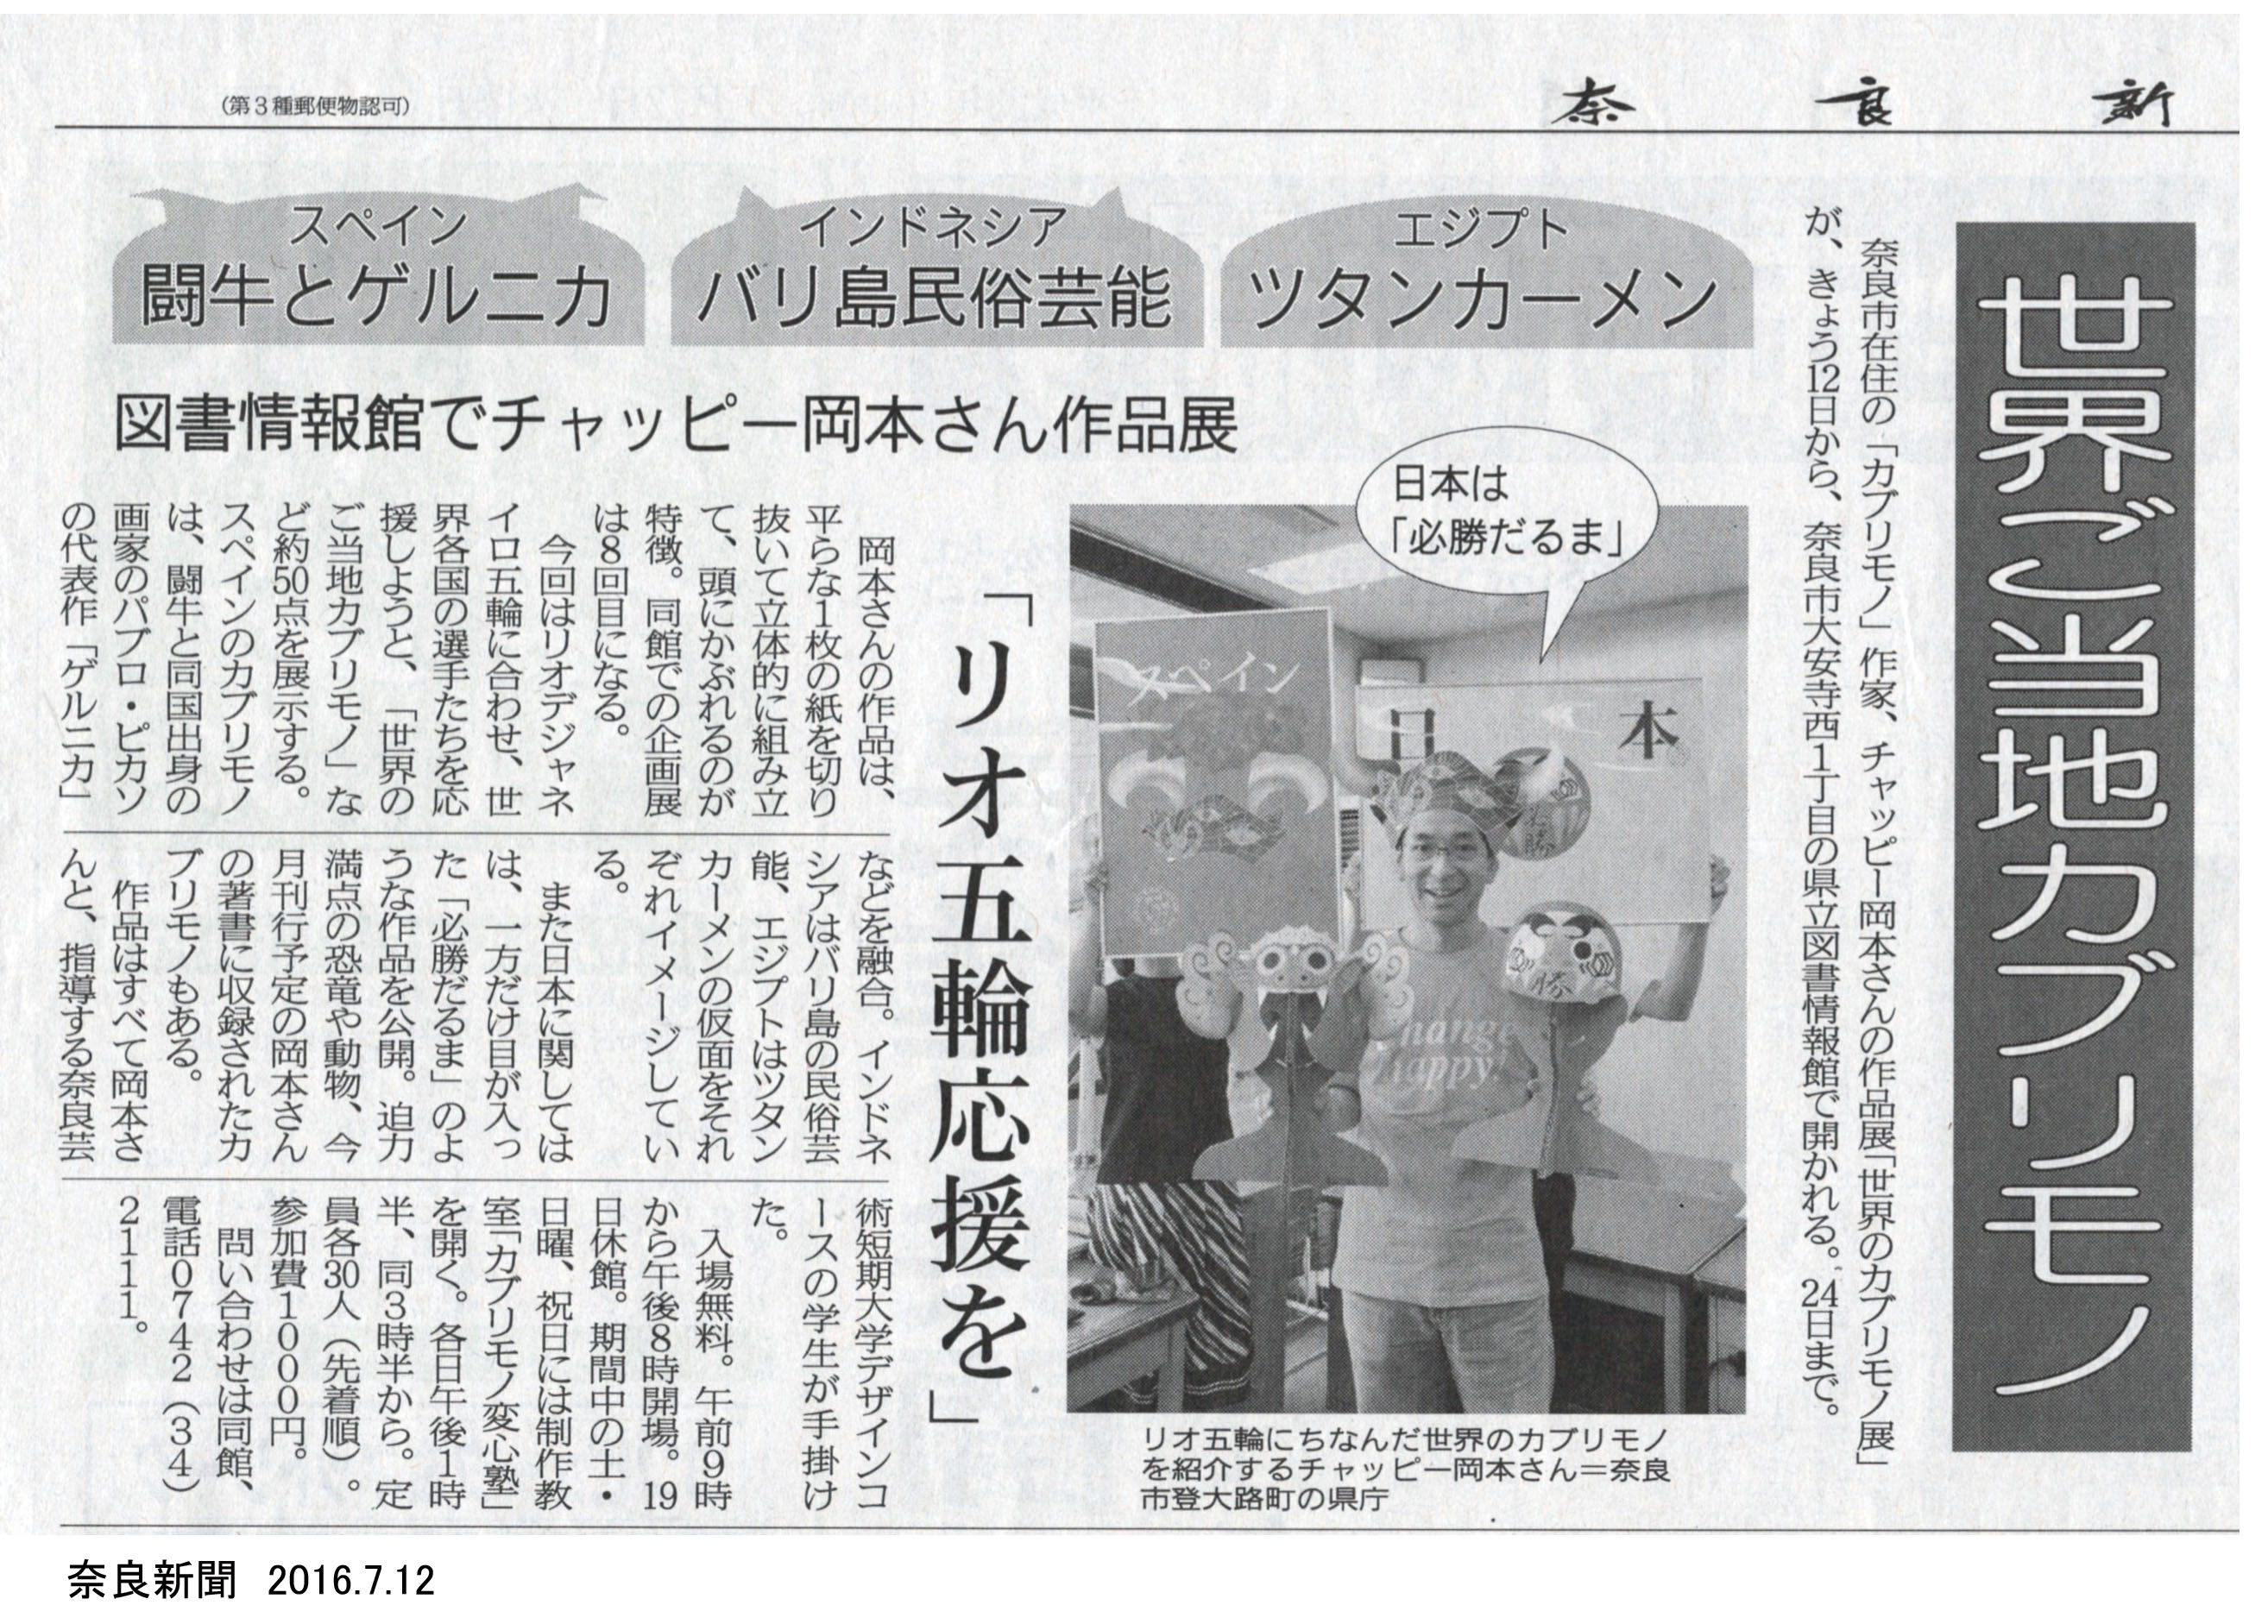 世界のカブリモノ展の奈良新聞掲載分